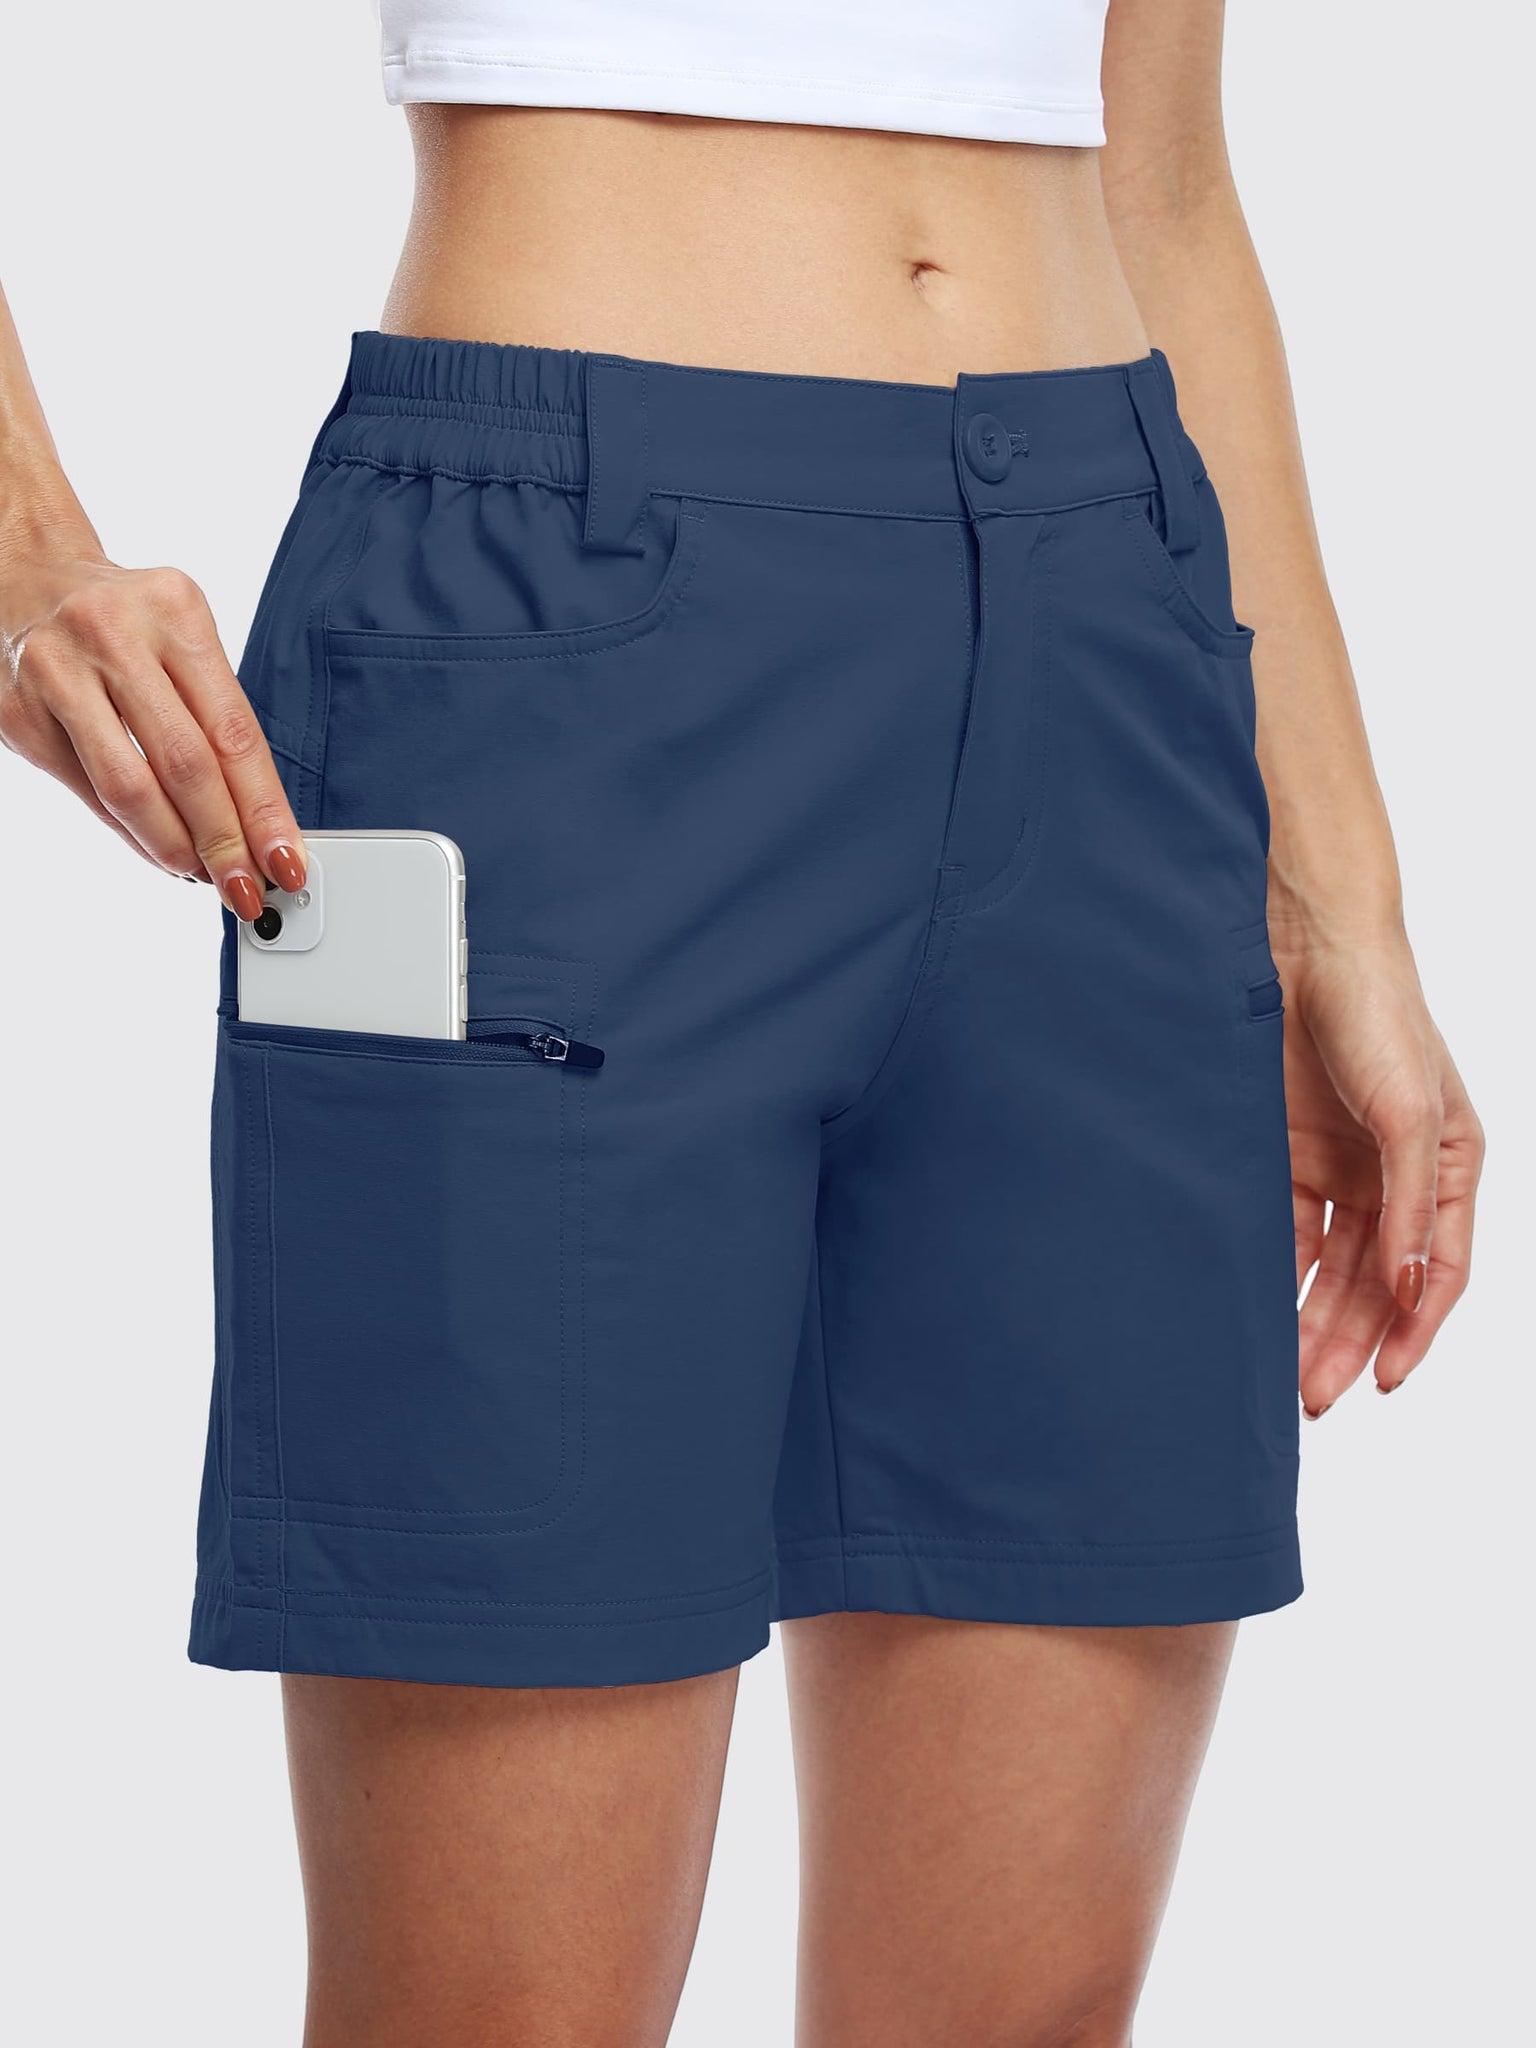 Willit Women's Outdoor Cargo Shorts 6 Inseam_Navy_model4